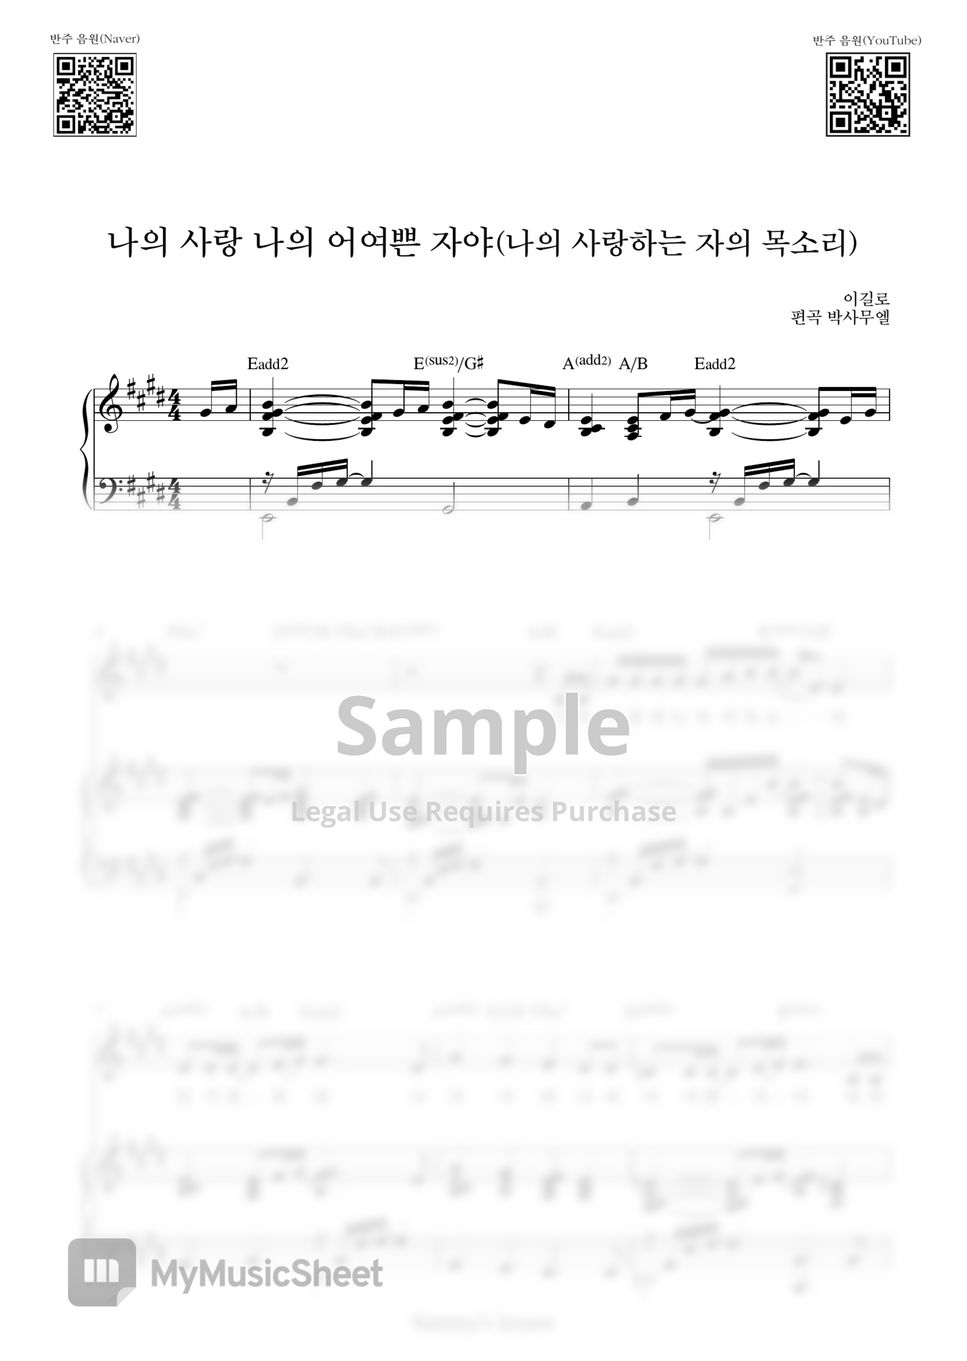 이길로 - 나의 사랑 나의 어여쁜 자야 (나의 사랑하는 자의 목소리) (Piano Cover) by Samuel Park